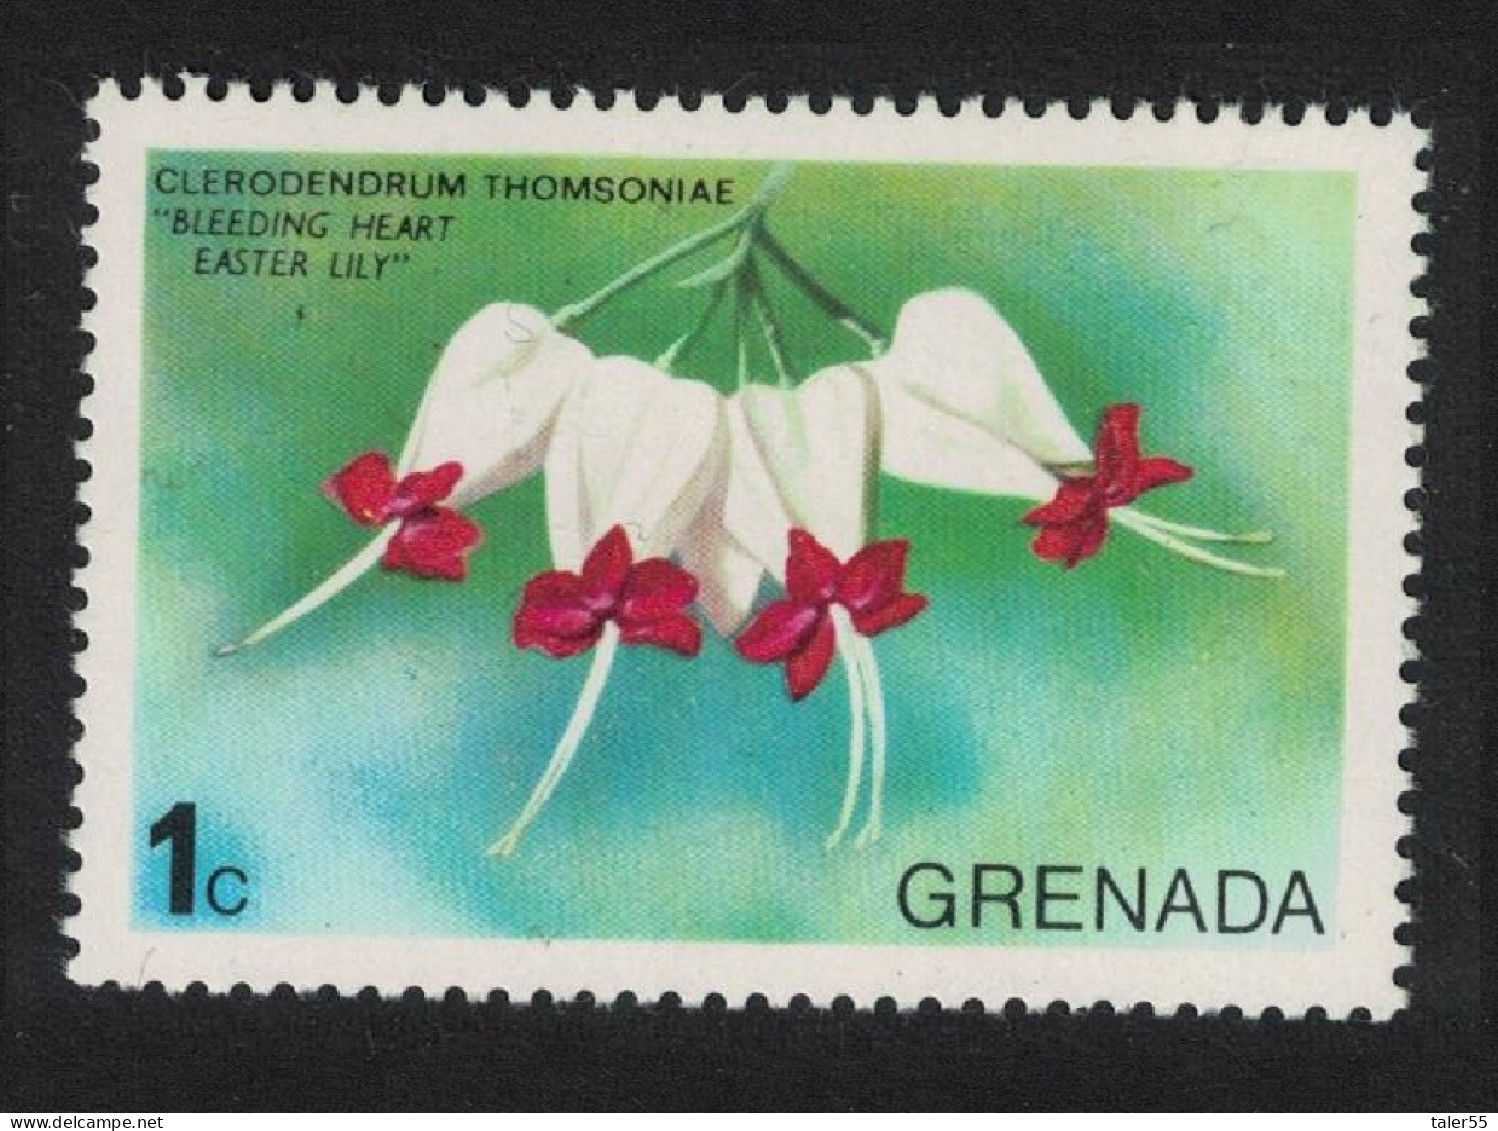 Grenada Easter Lily 'Bleeding Heart' Flower 1975 MNH SG#679 - Grenada (1974-...)